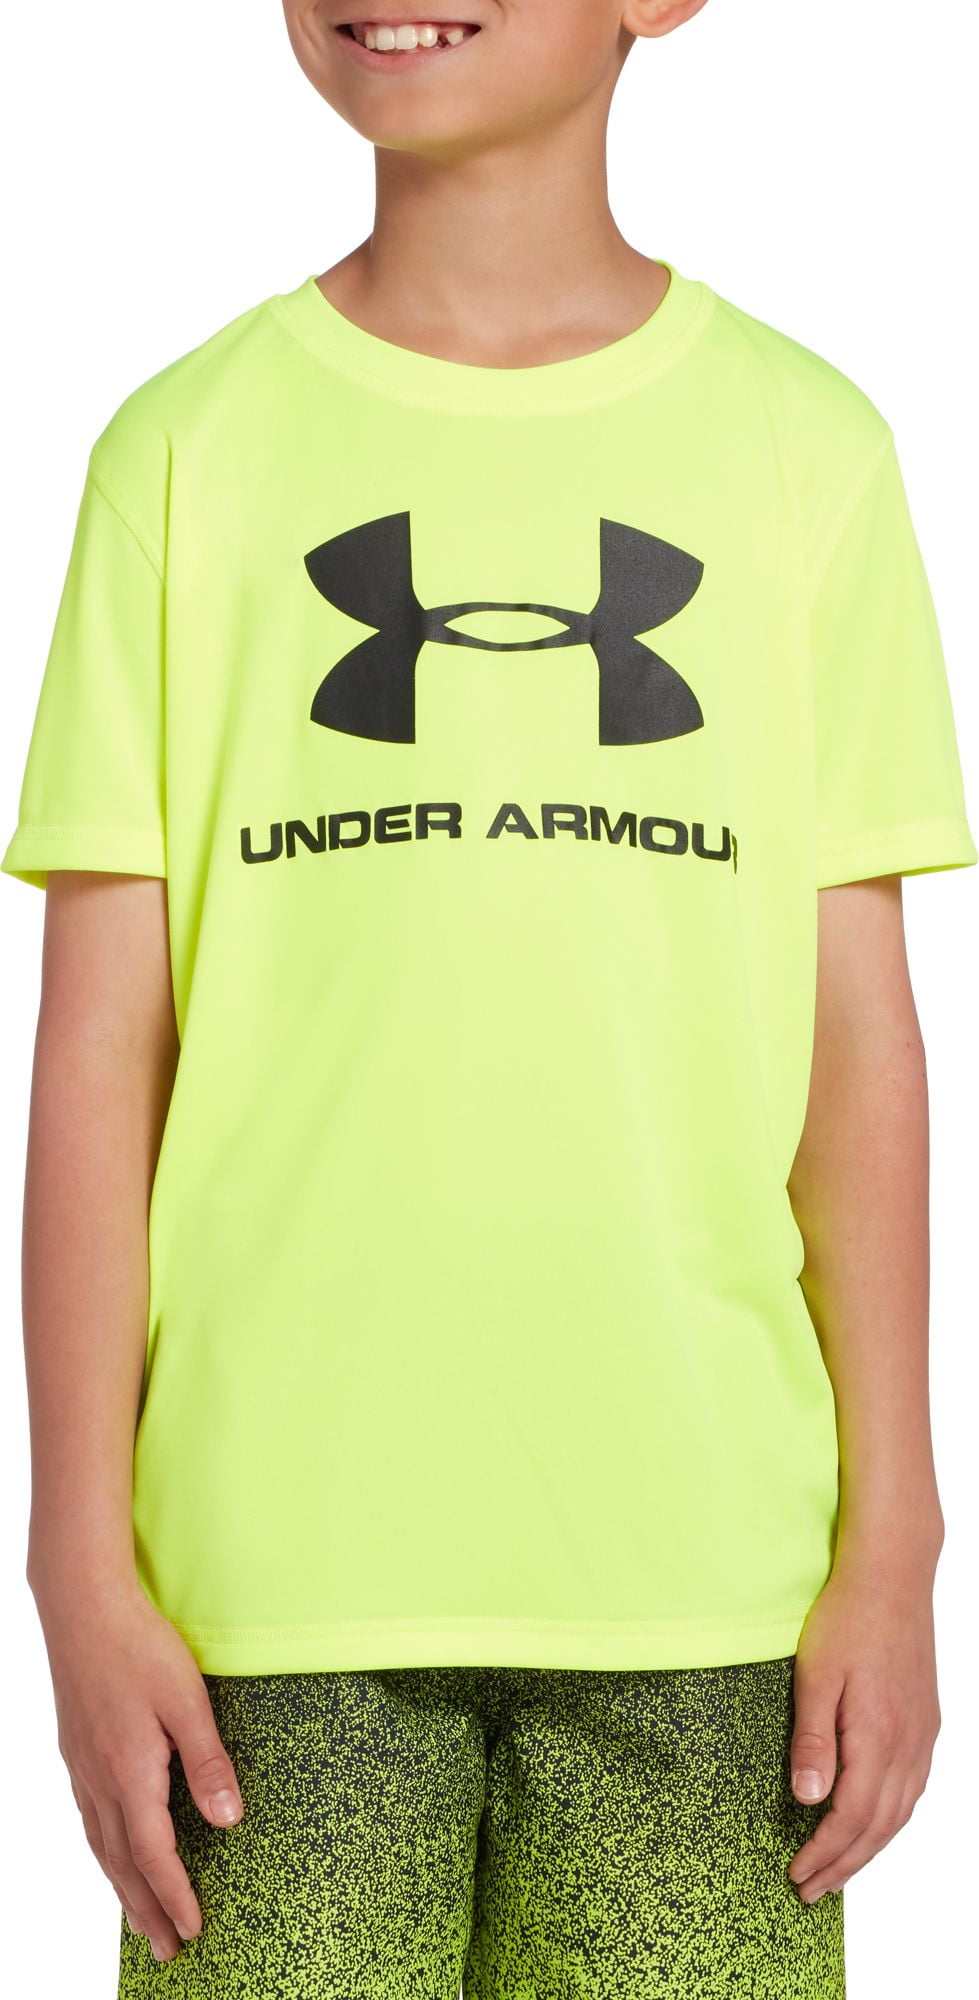 Under Armour - Under Armour Boys' Big Logo Short Sleeve Rash Guard ...